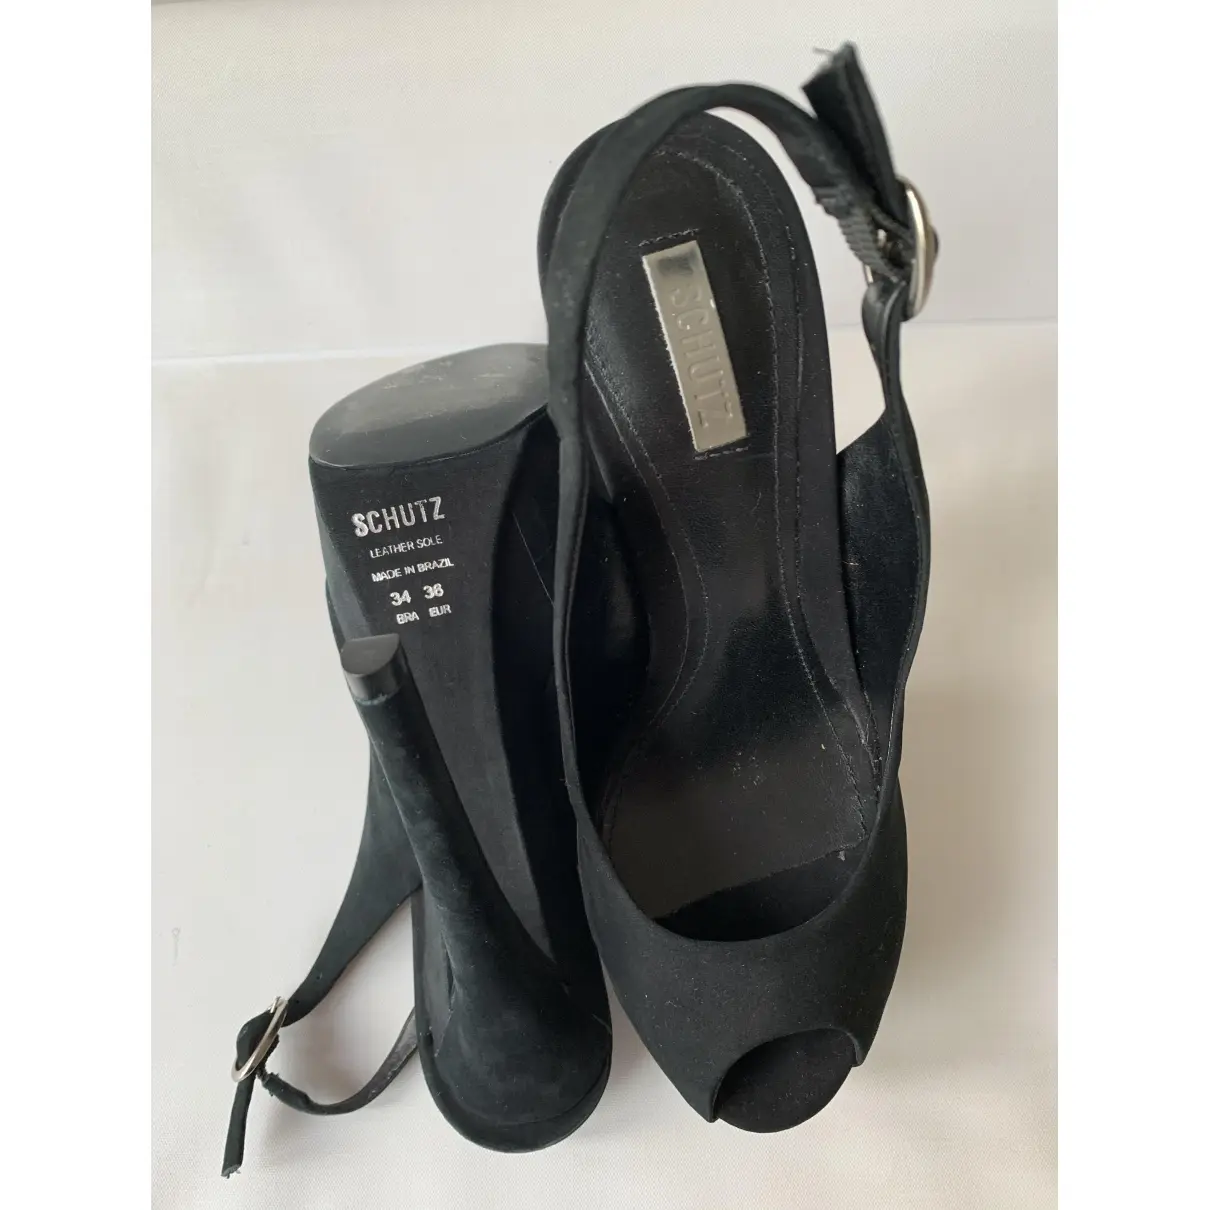 Buy Schutz Sandals online